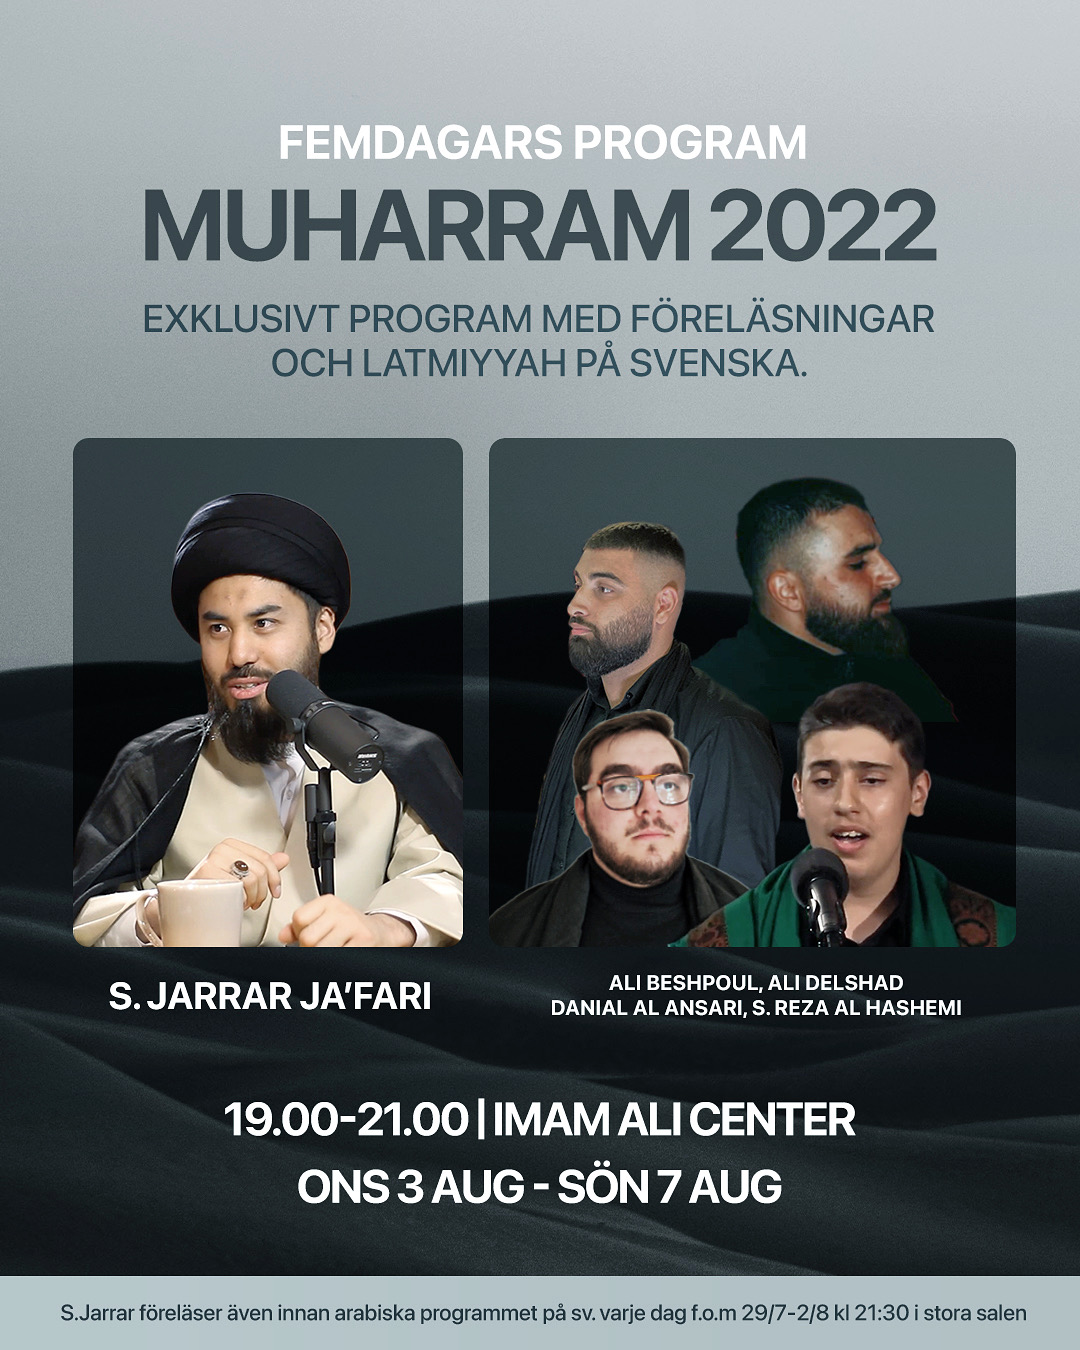 Muharramprogram p åsvenska - 2022